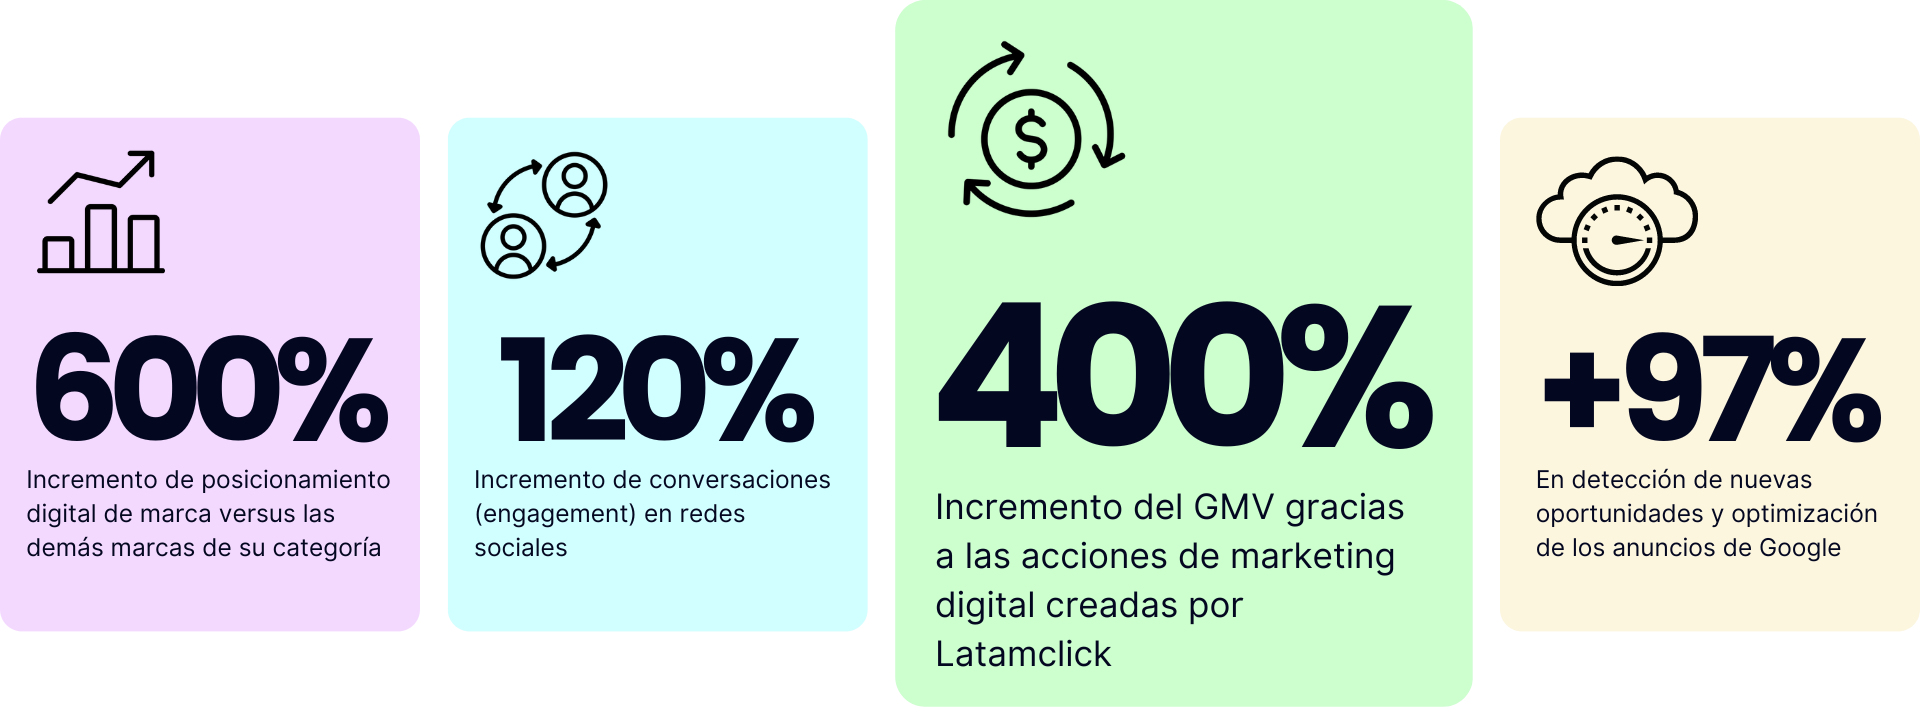 Resultados de marketing digital de Latamclick, aumento del 400% GMV